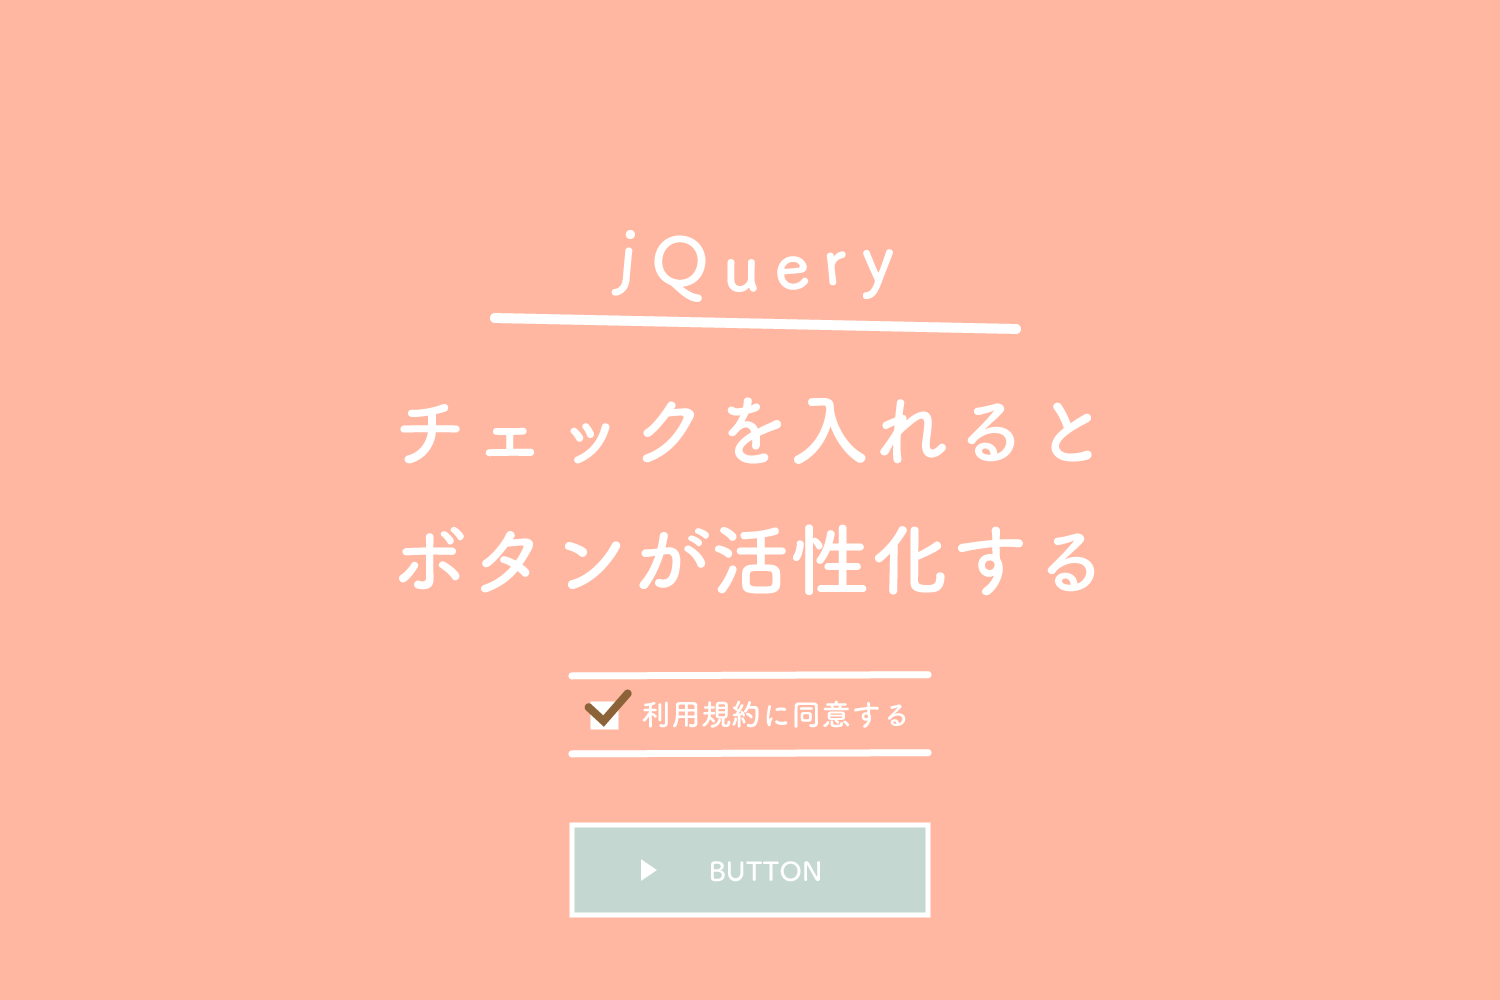 【jQuery】チェックボックスにチェックを入れるとボタンが活性化する